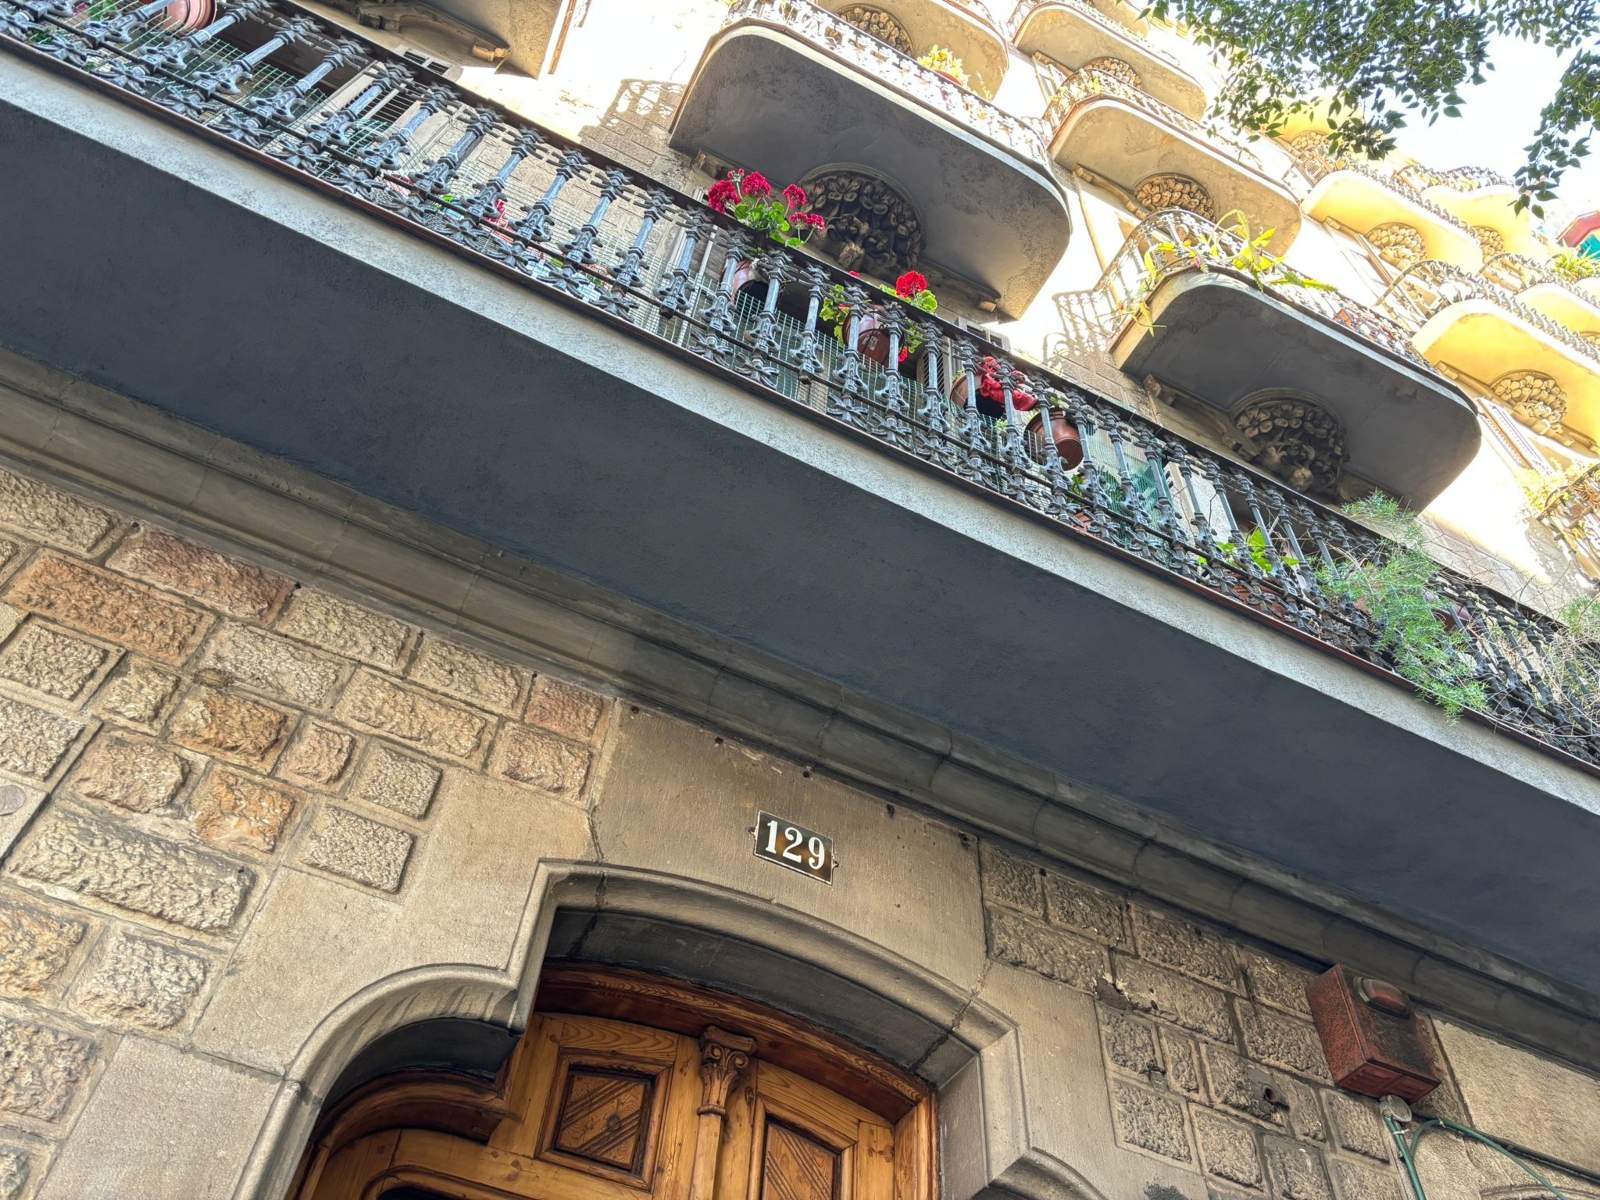 Un lladre mor en caure d'un sisè pis quan fugia després d'atracar una nena en un edifici a Barcelona